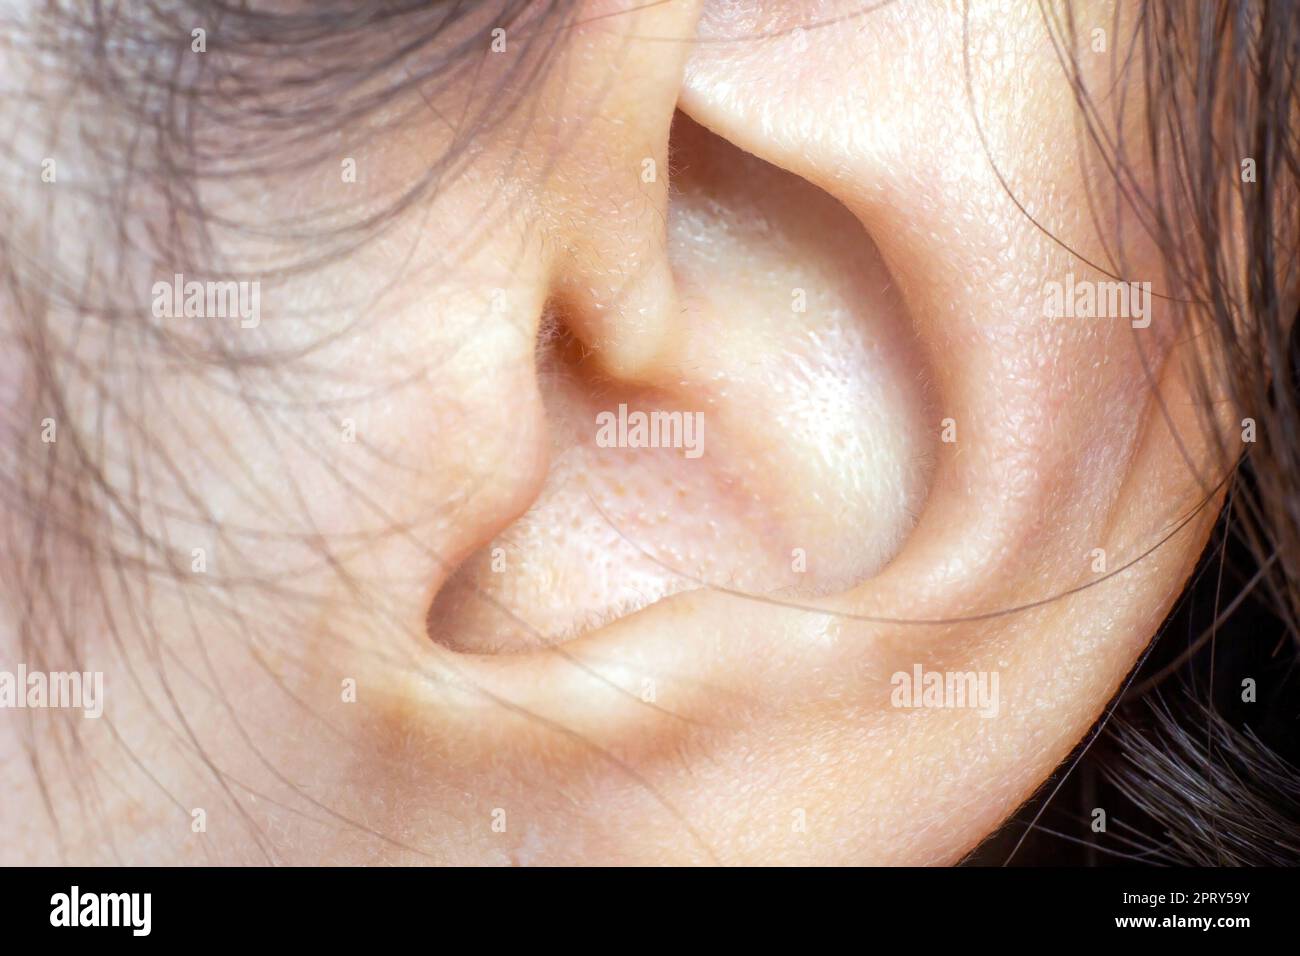 Dettaglio della testa con i capelli e l'orecchio umano femminile al primo piano di esame medico. Foto Stock